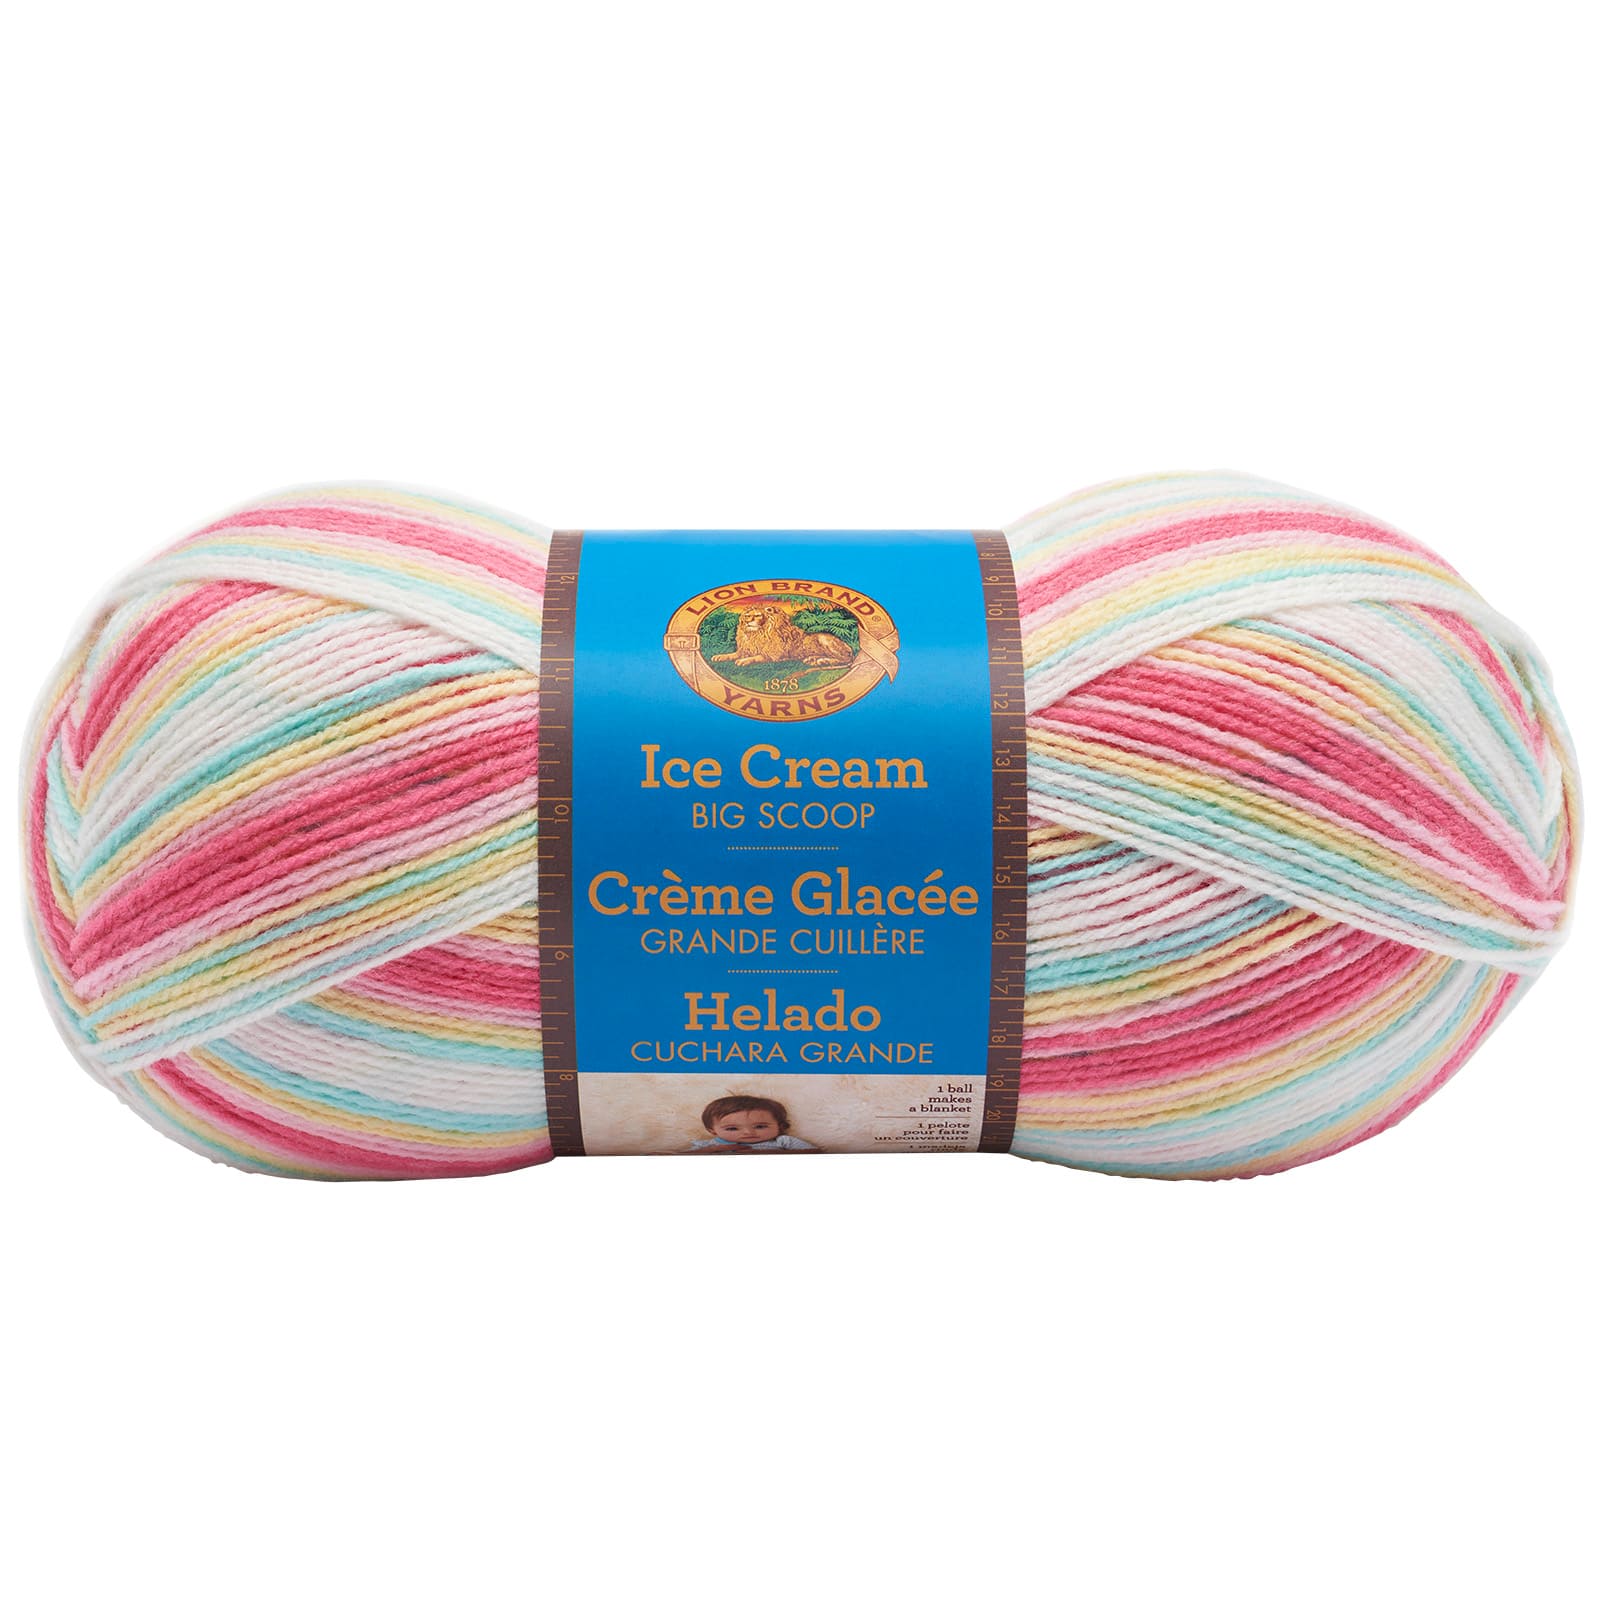  Lion Brand Knitting Yarn Ice Cream Parfait 3-Skein